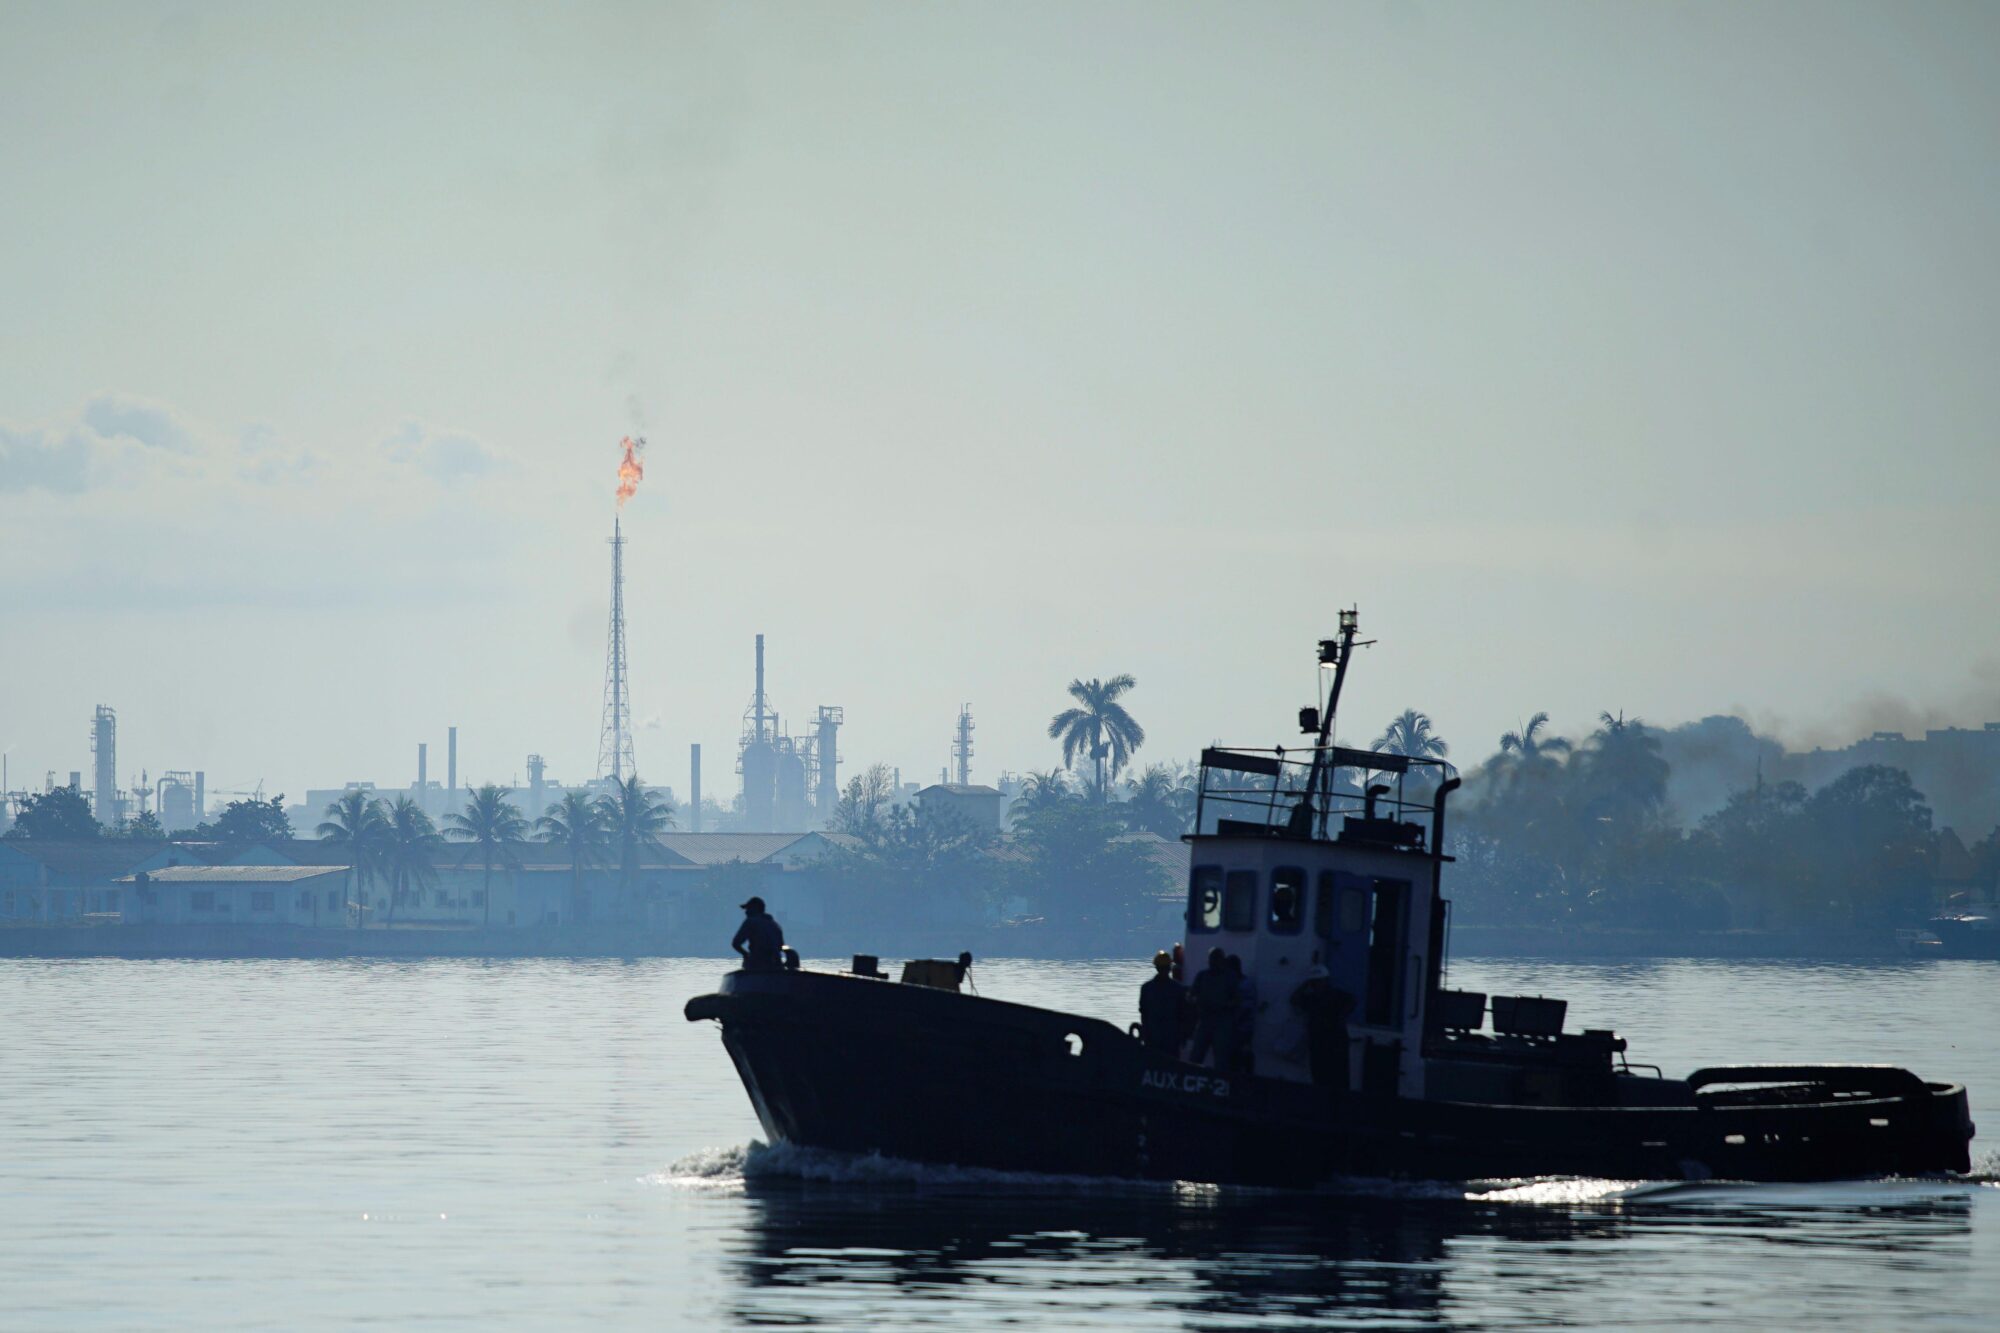 <p>Vista de la refinería de petróleo Nico López (al fondo) mientras un remolcador pasa por la bahía de La Habana, Cuba, 30 de abril de 2018. REUTERS / Alexandre Meneghini</p>